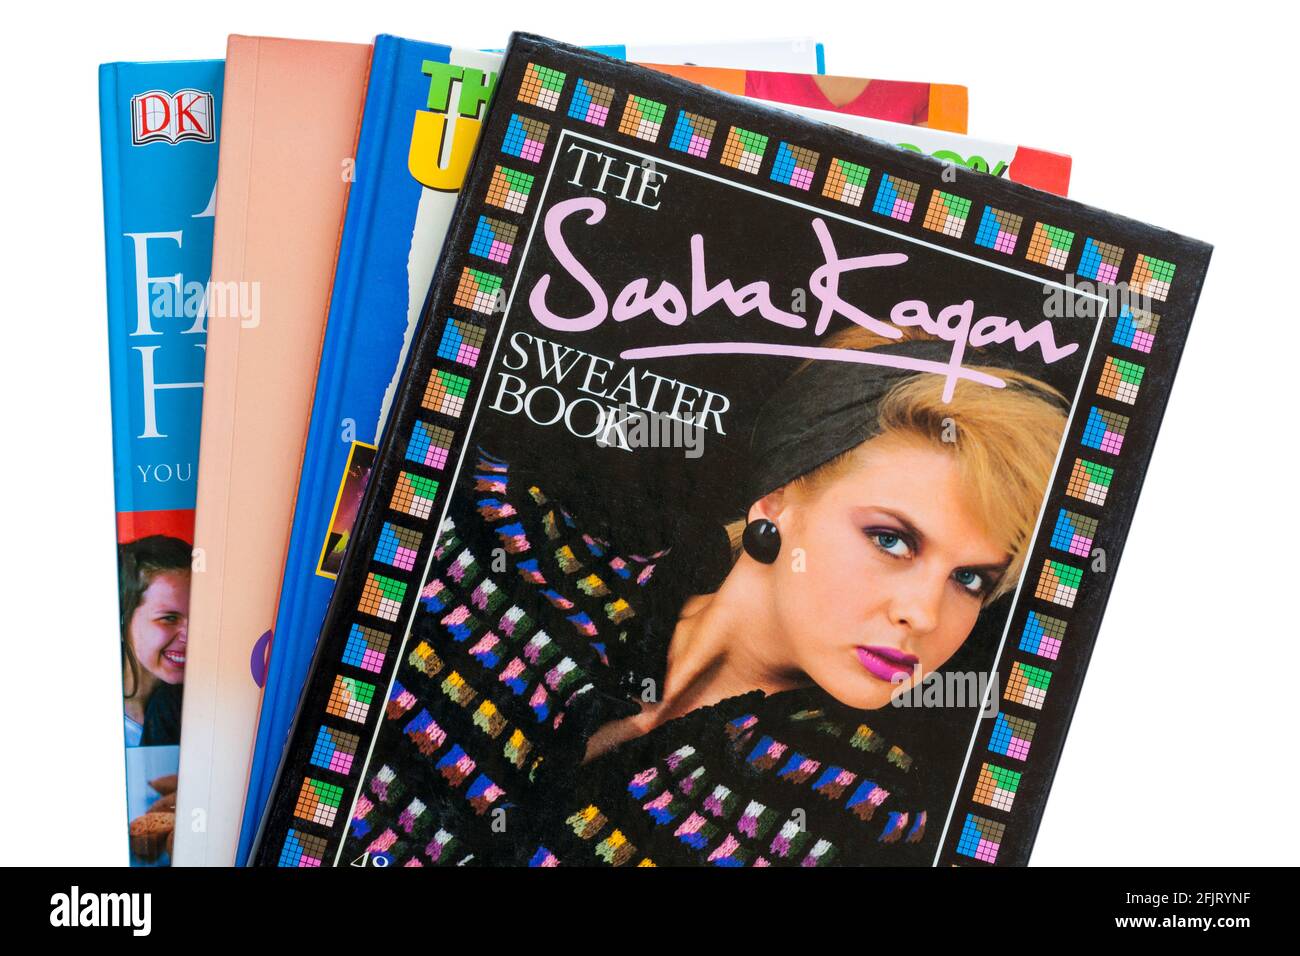 Bücherstapel mit dem Sasha Kagan Sweater Book on Top auf weißem Hintergrund gesetzt Stockfoto